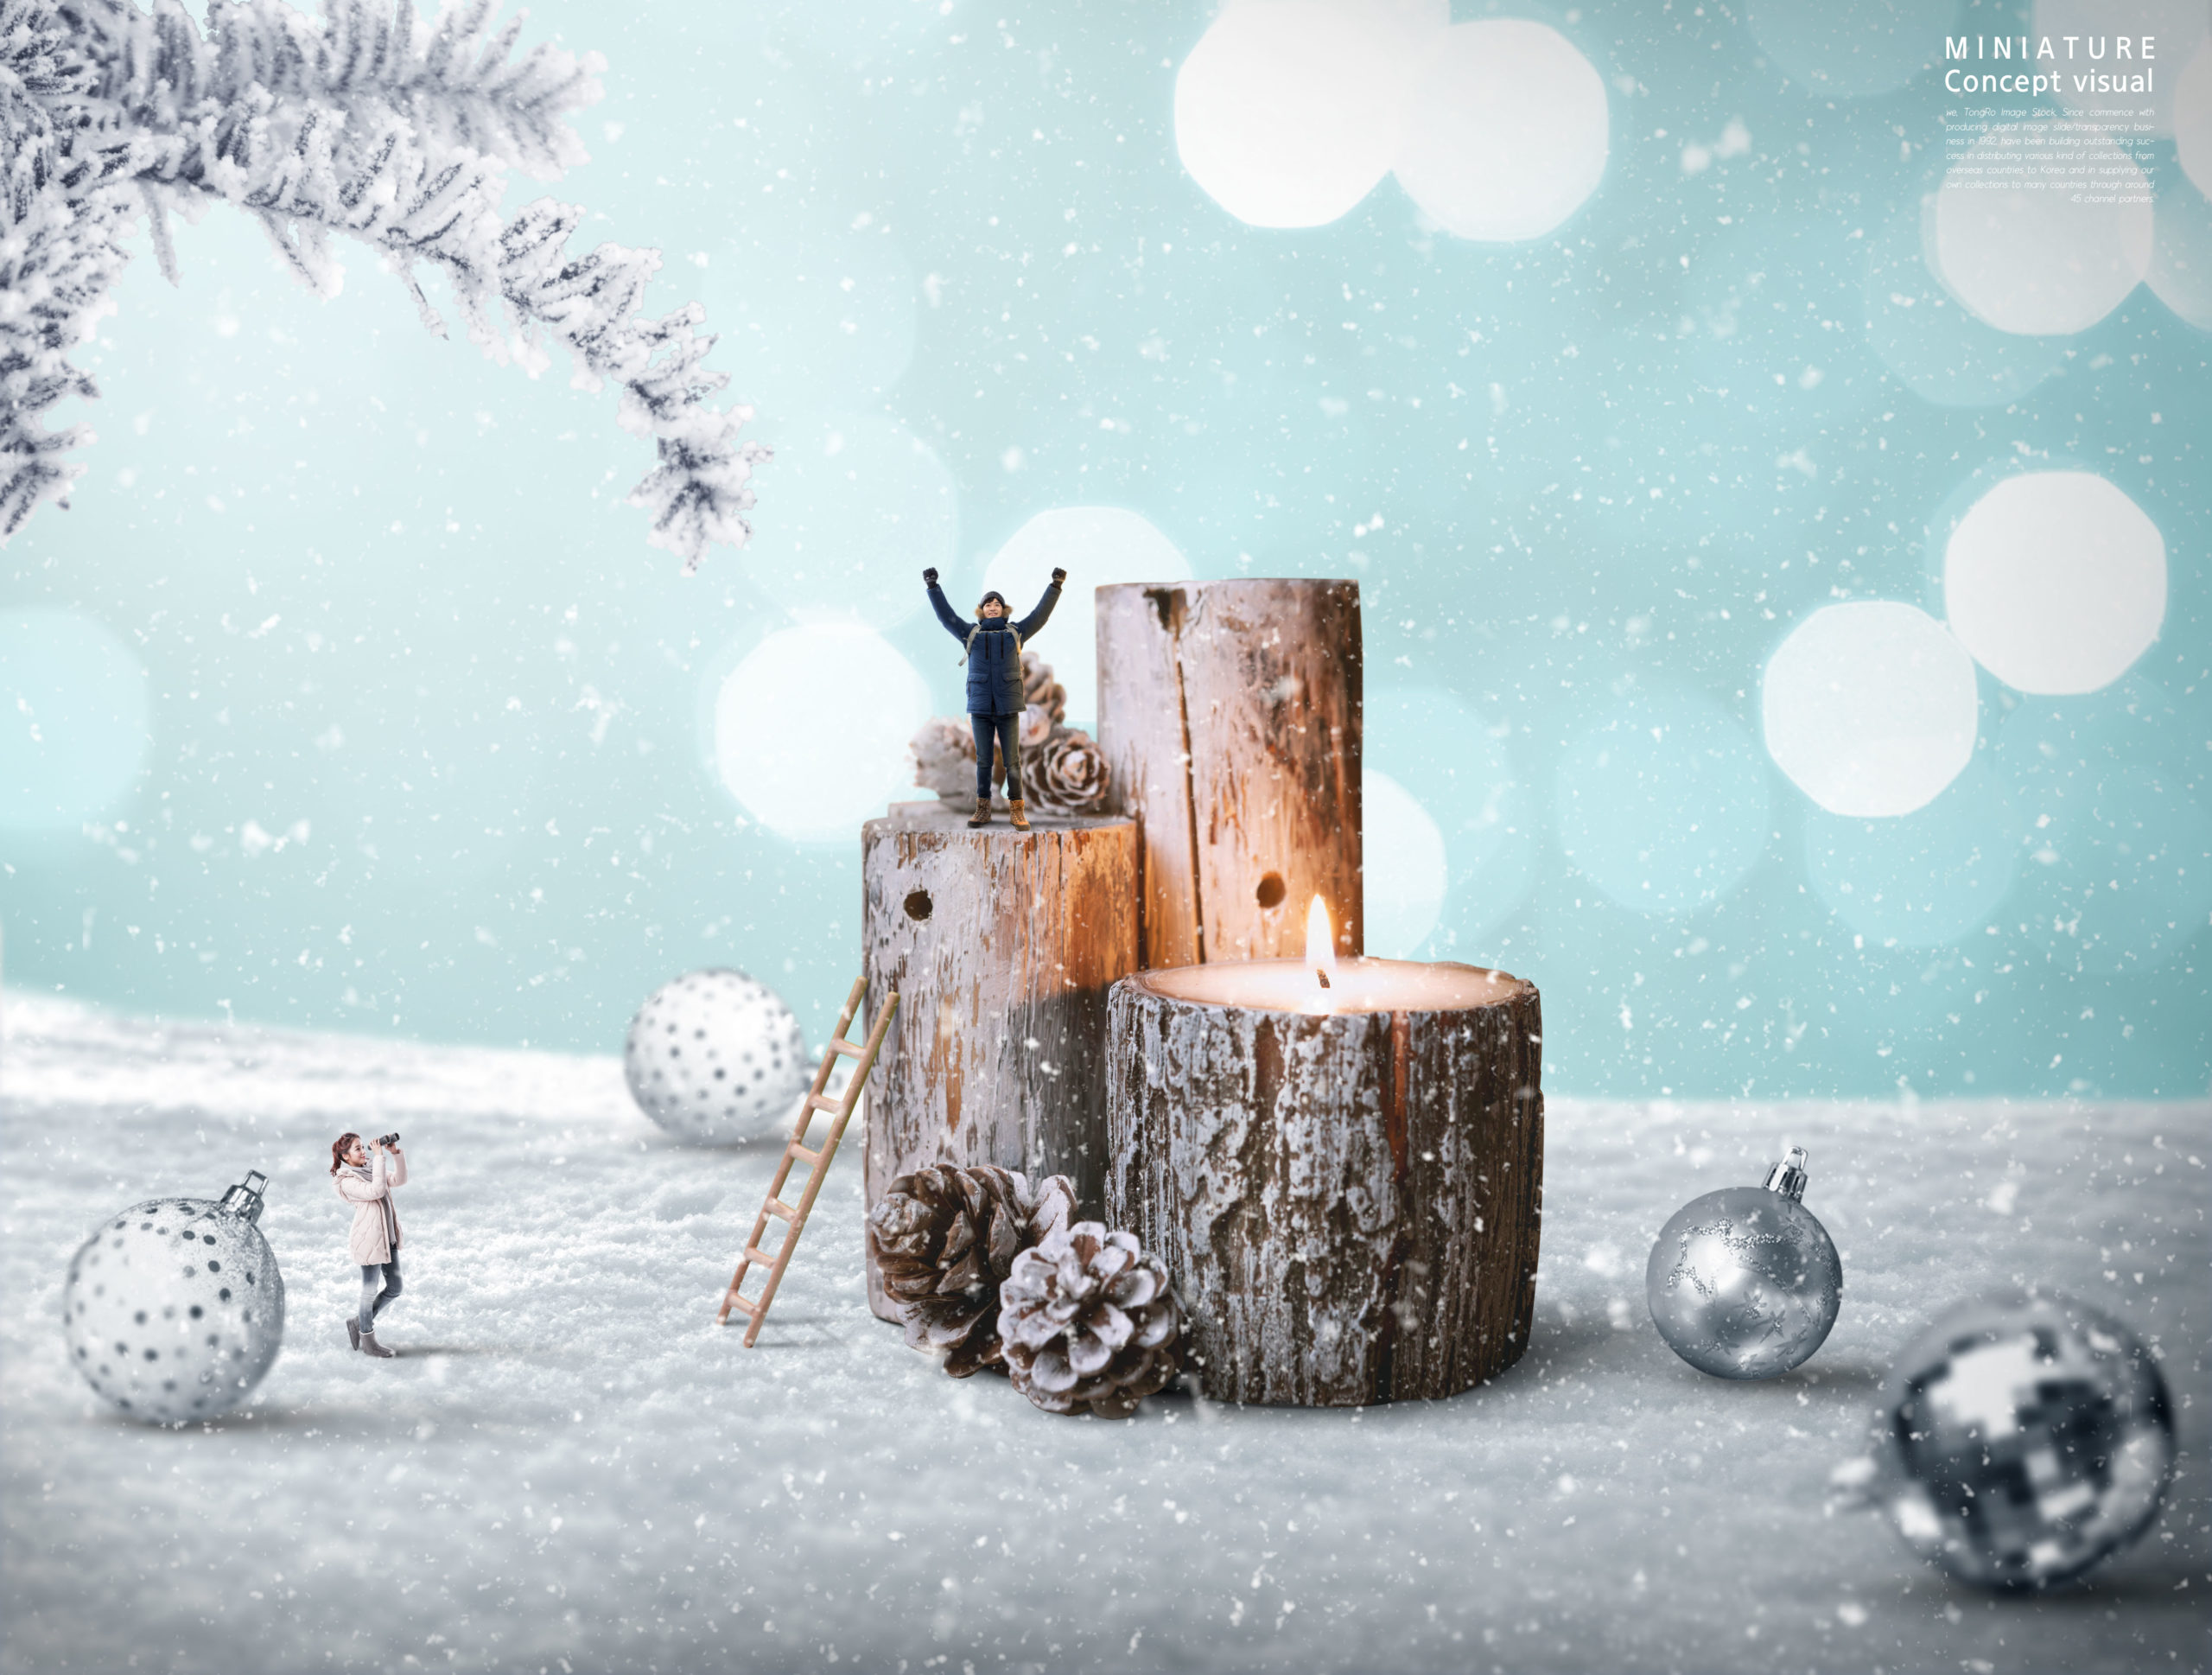 冬季圣诞主题微型视觉场景psd素材合集插图(3)